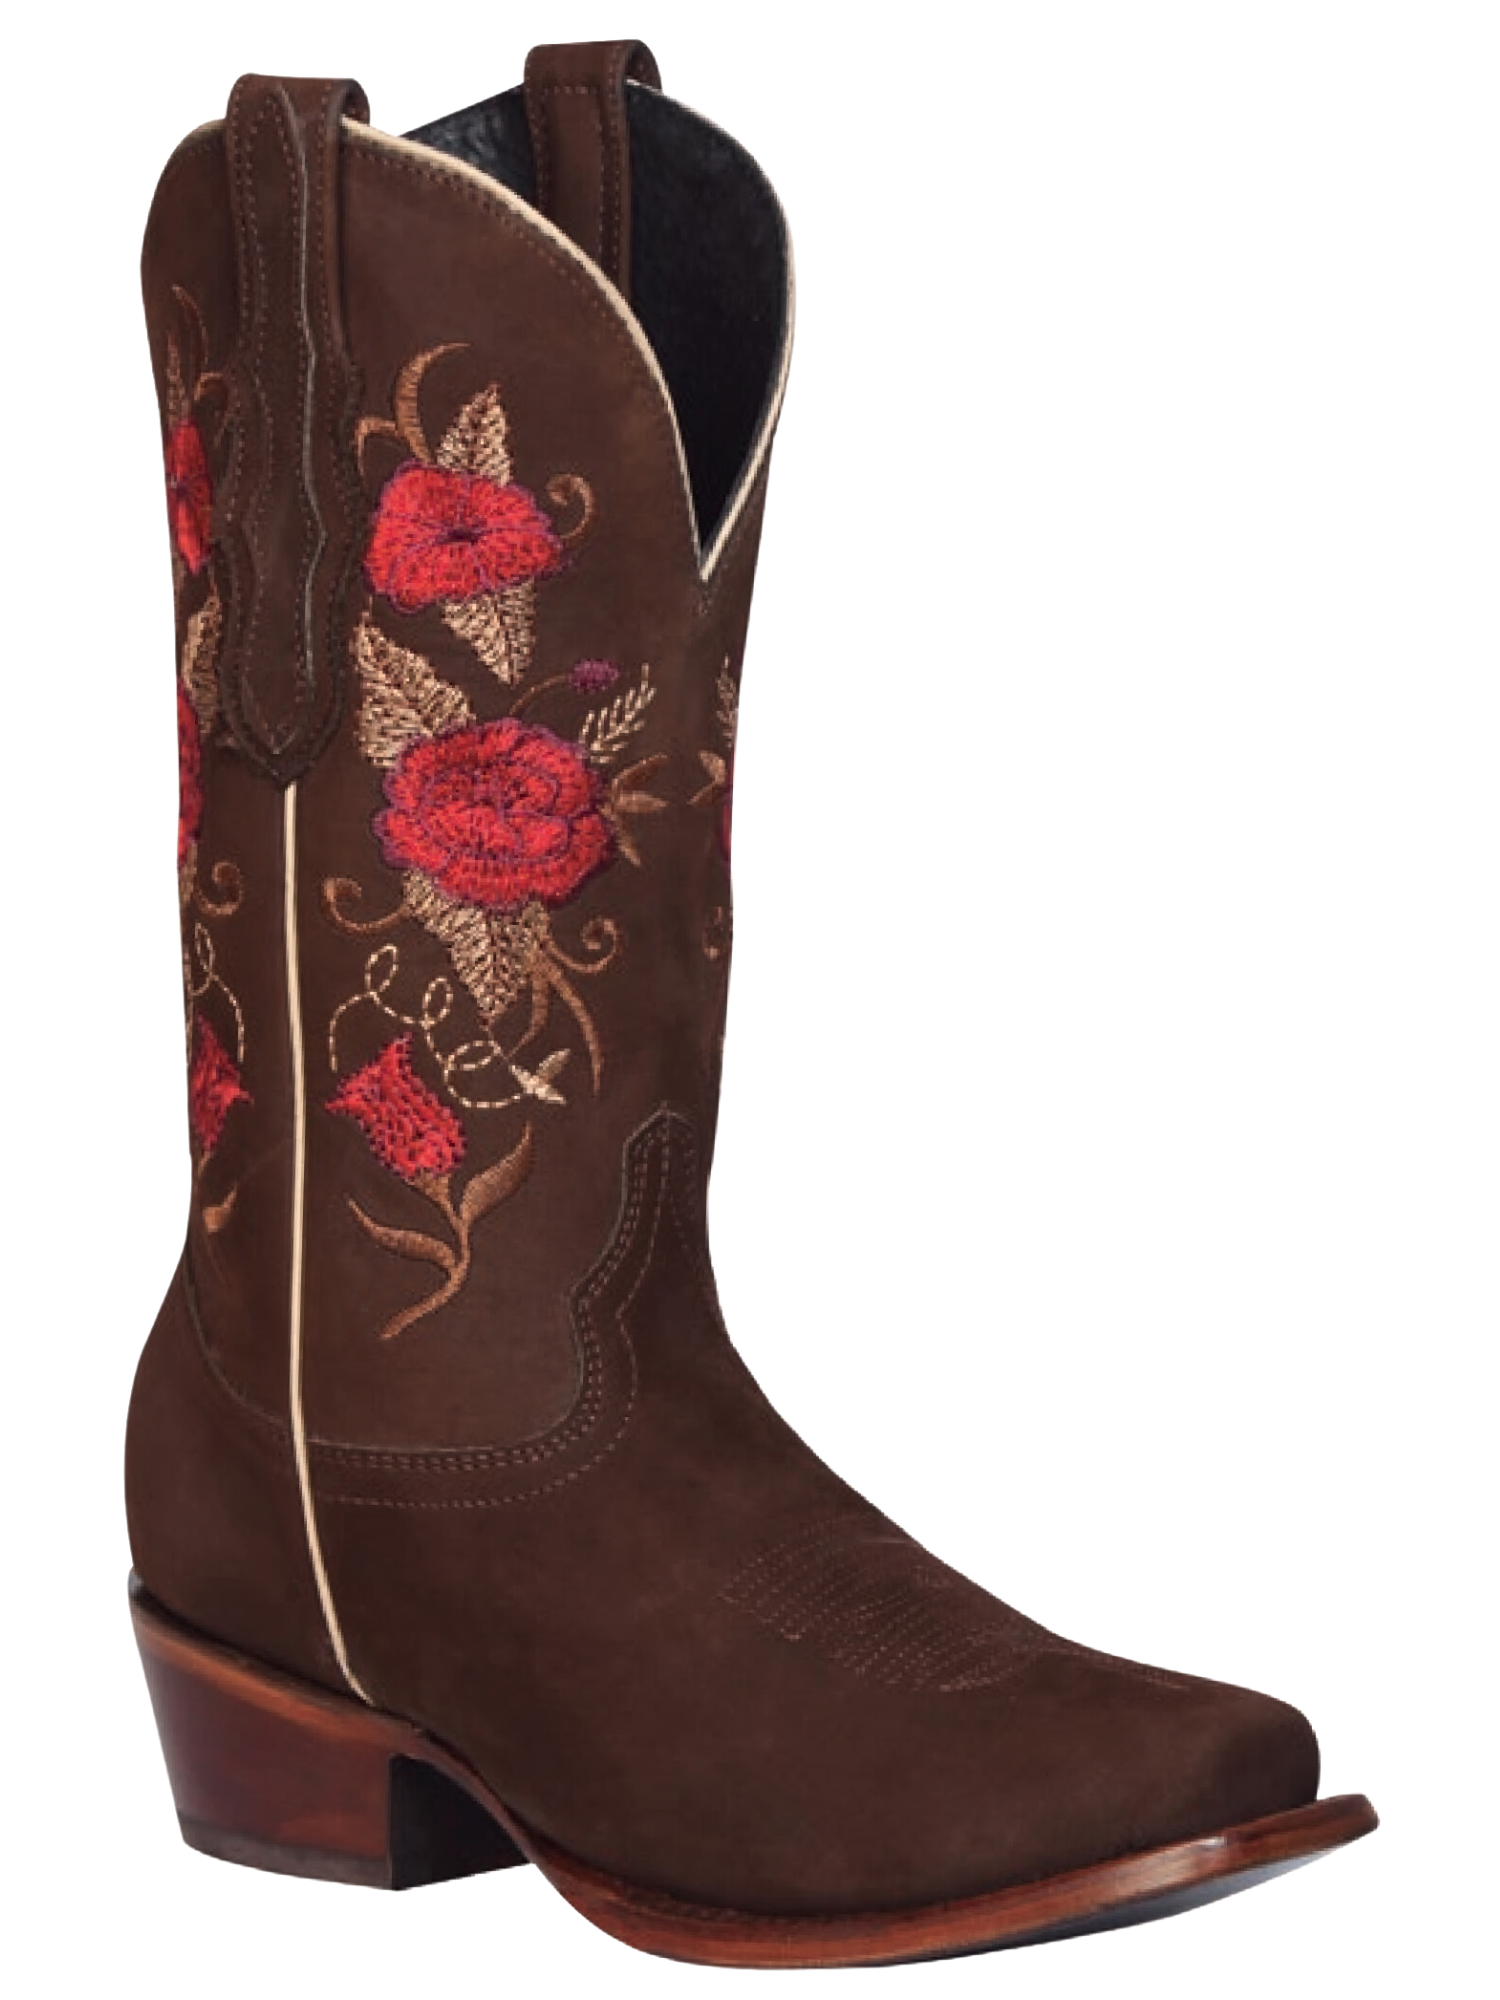 Botas Vaqueras Rodeo con Tubo Bordado de Flores de Piel Nobuck para Mujer 'El General' - ID: 42025 Cowgirl Boots El General 